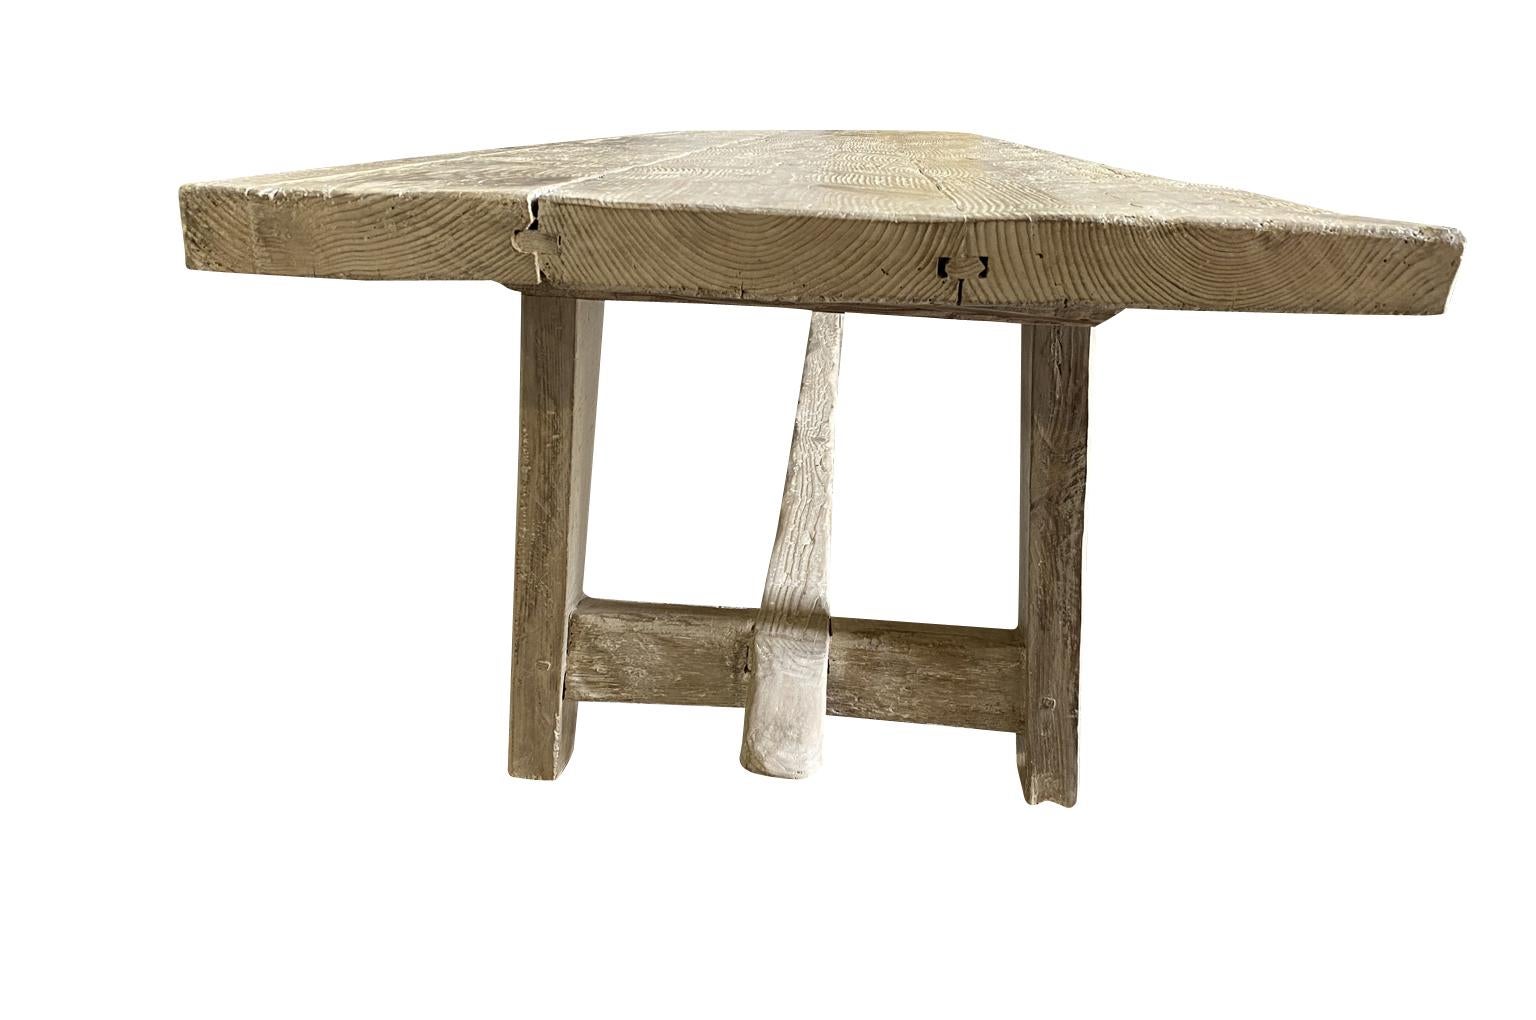 Spanish Trestle Table, Farm Table 1